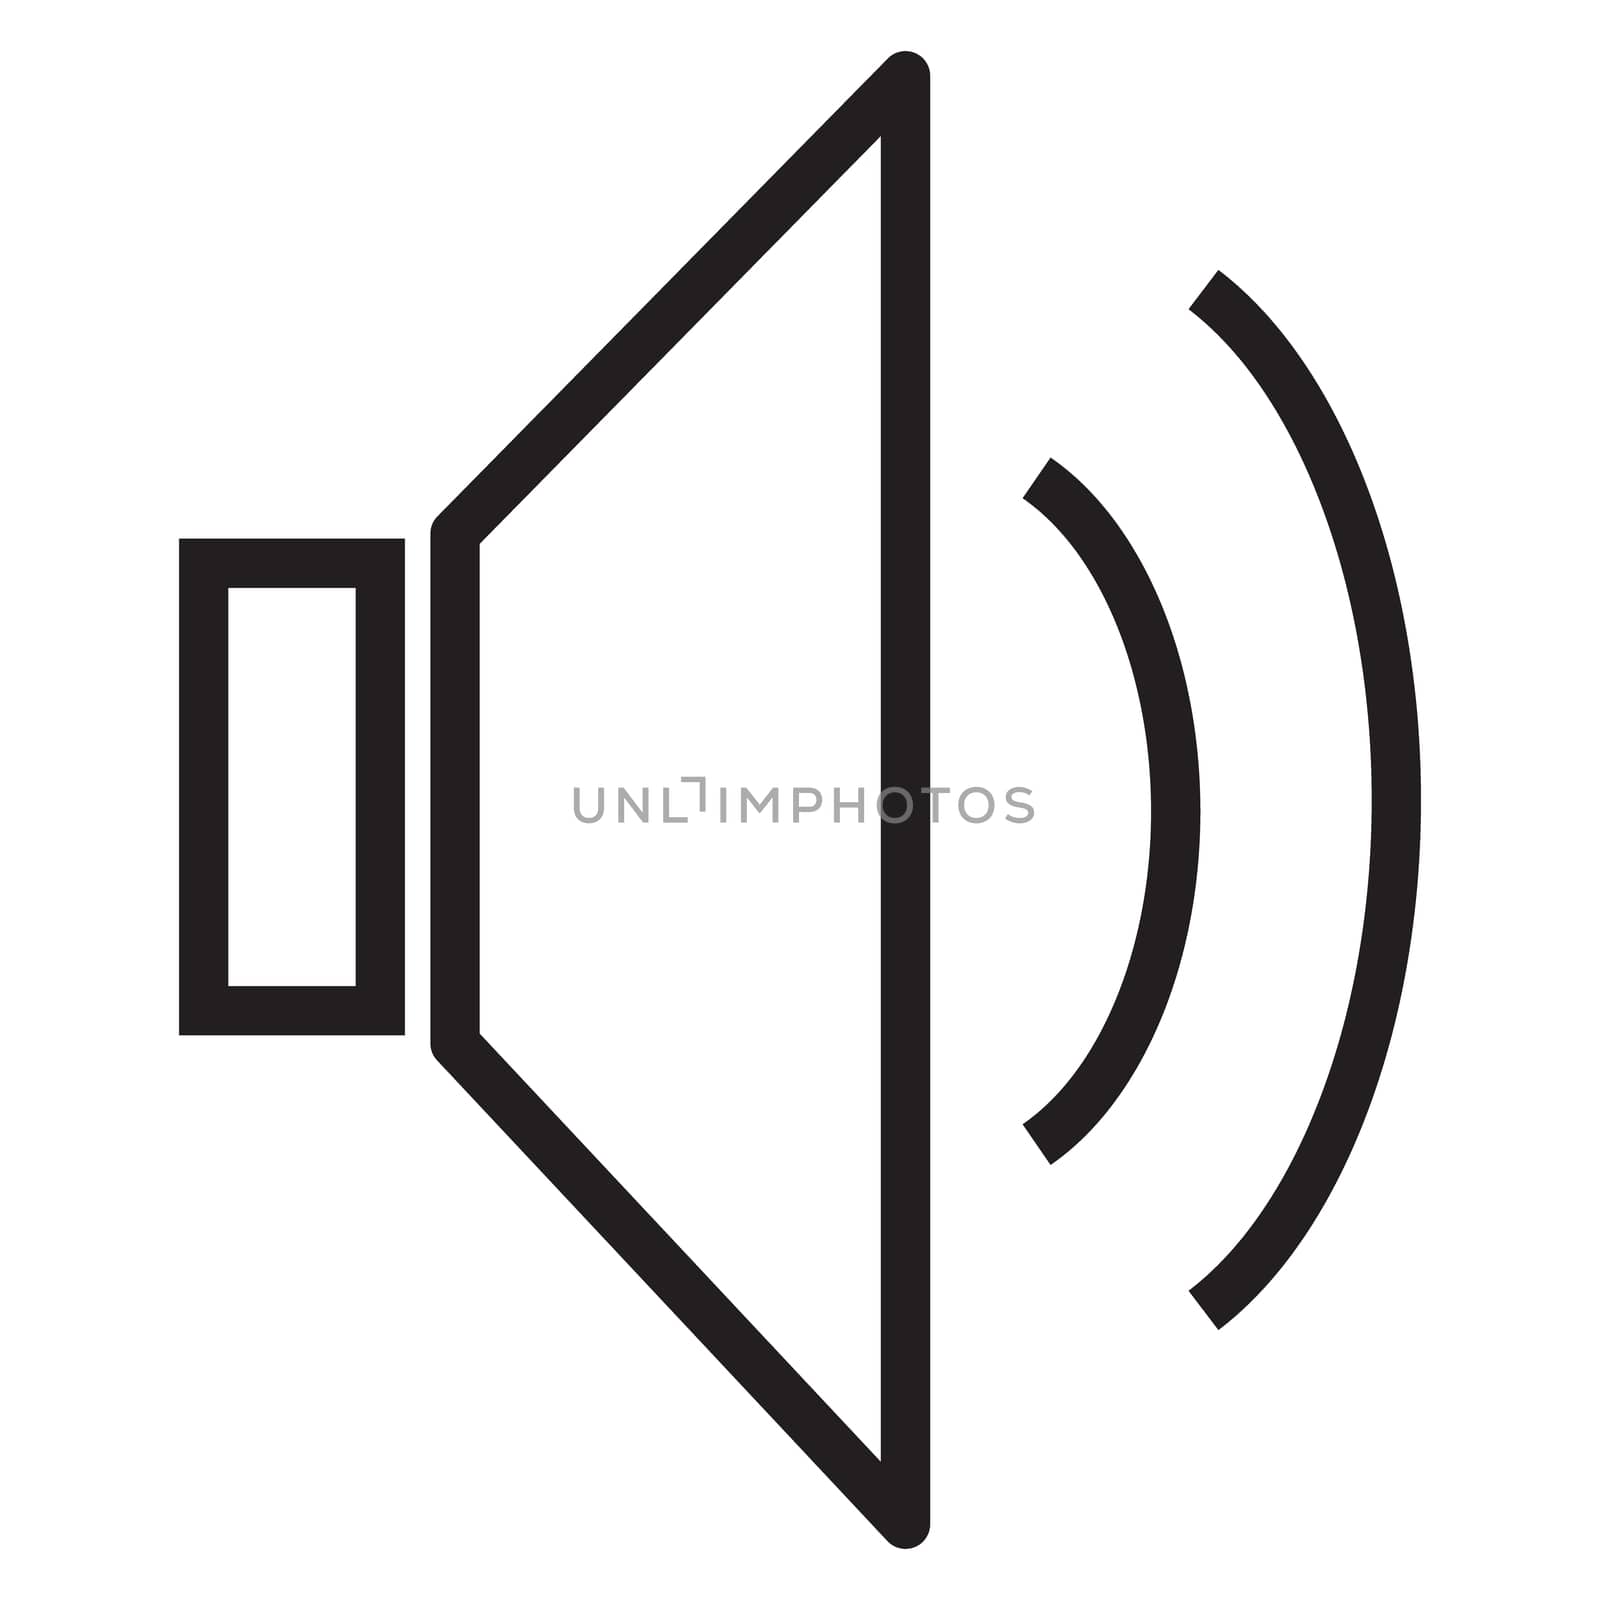 speaker icon, volume icon, speaker icon on white background, loud speaker icon